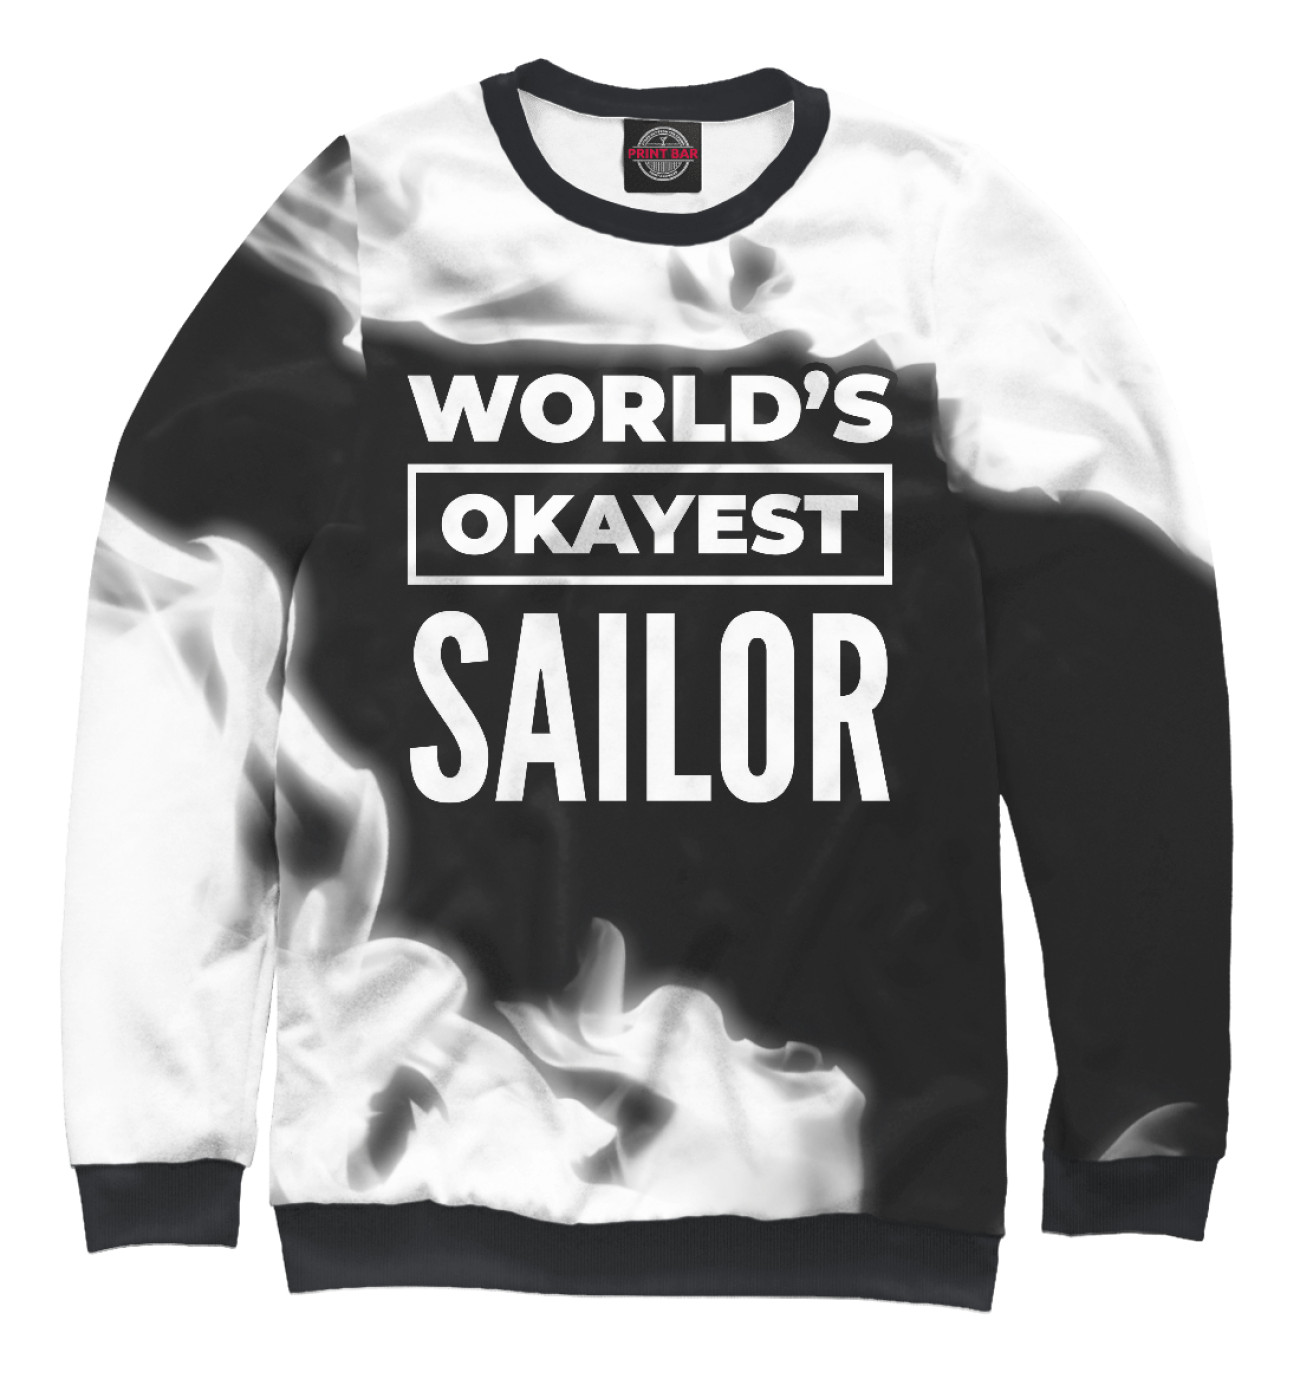 Мужской Свитшот World's okayest Sailor, артикул: SIL-700388-swi-2